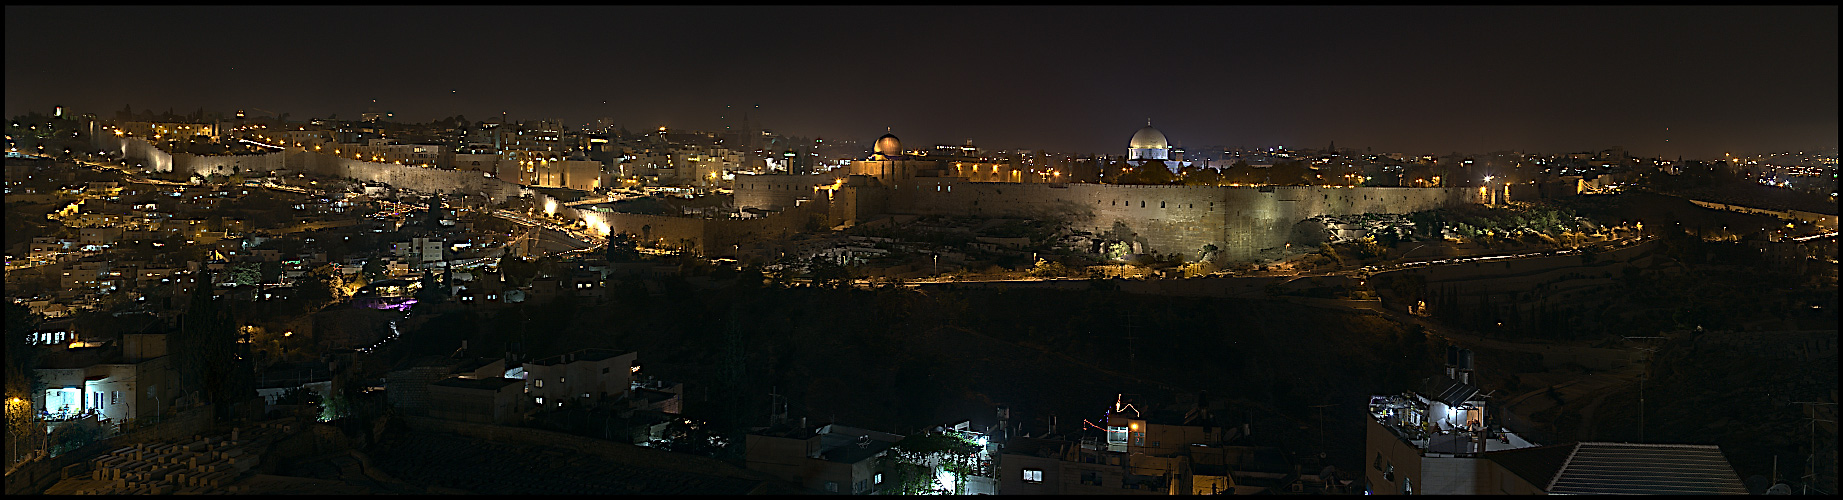 Old City - Jerusalem